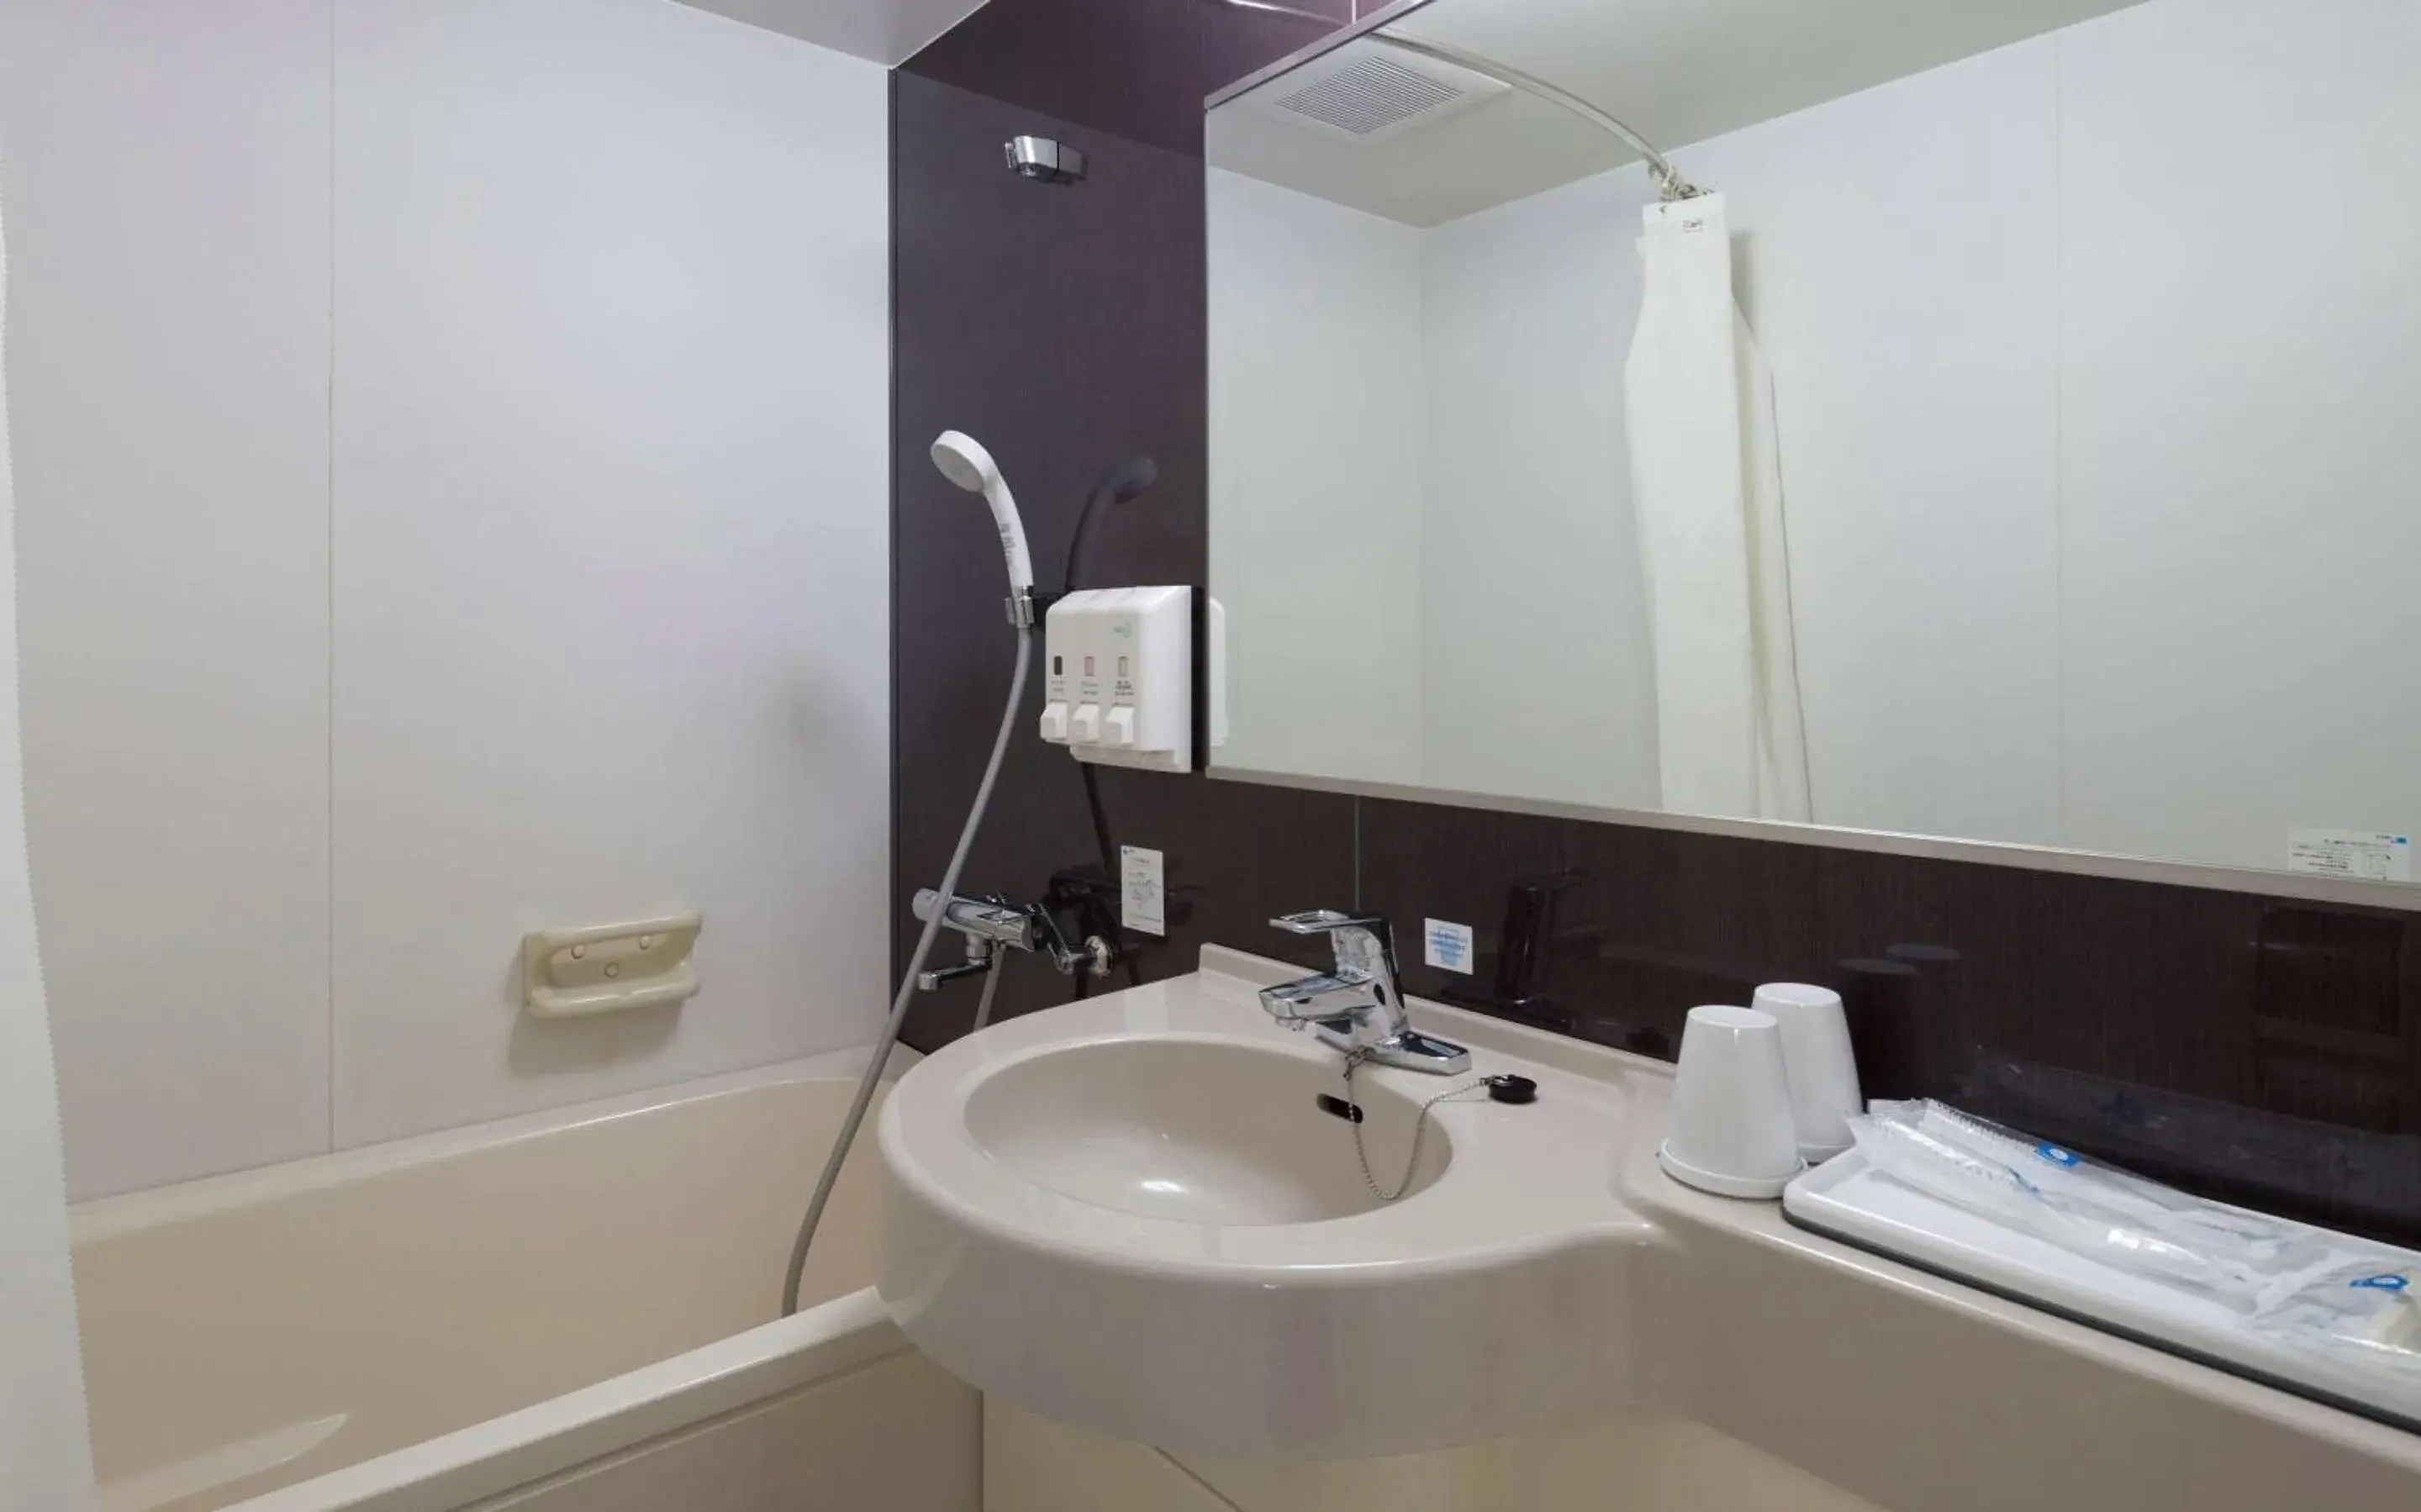 Bedroom, Bathroom in Comfort Hotel Hakata